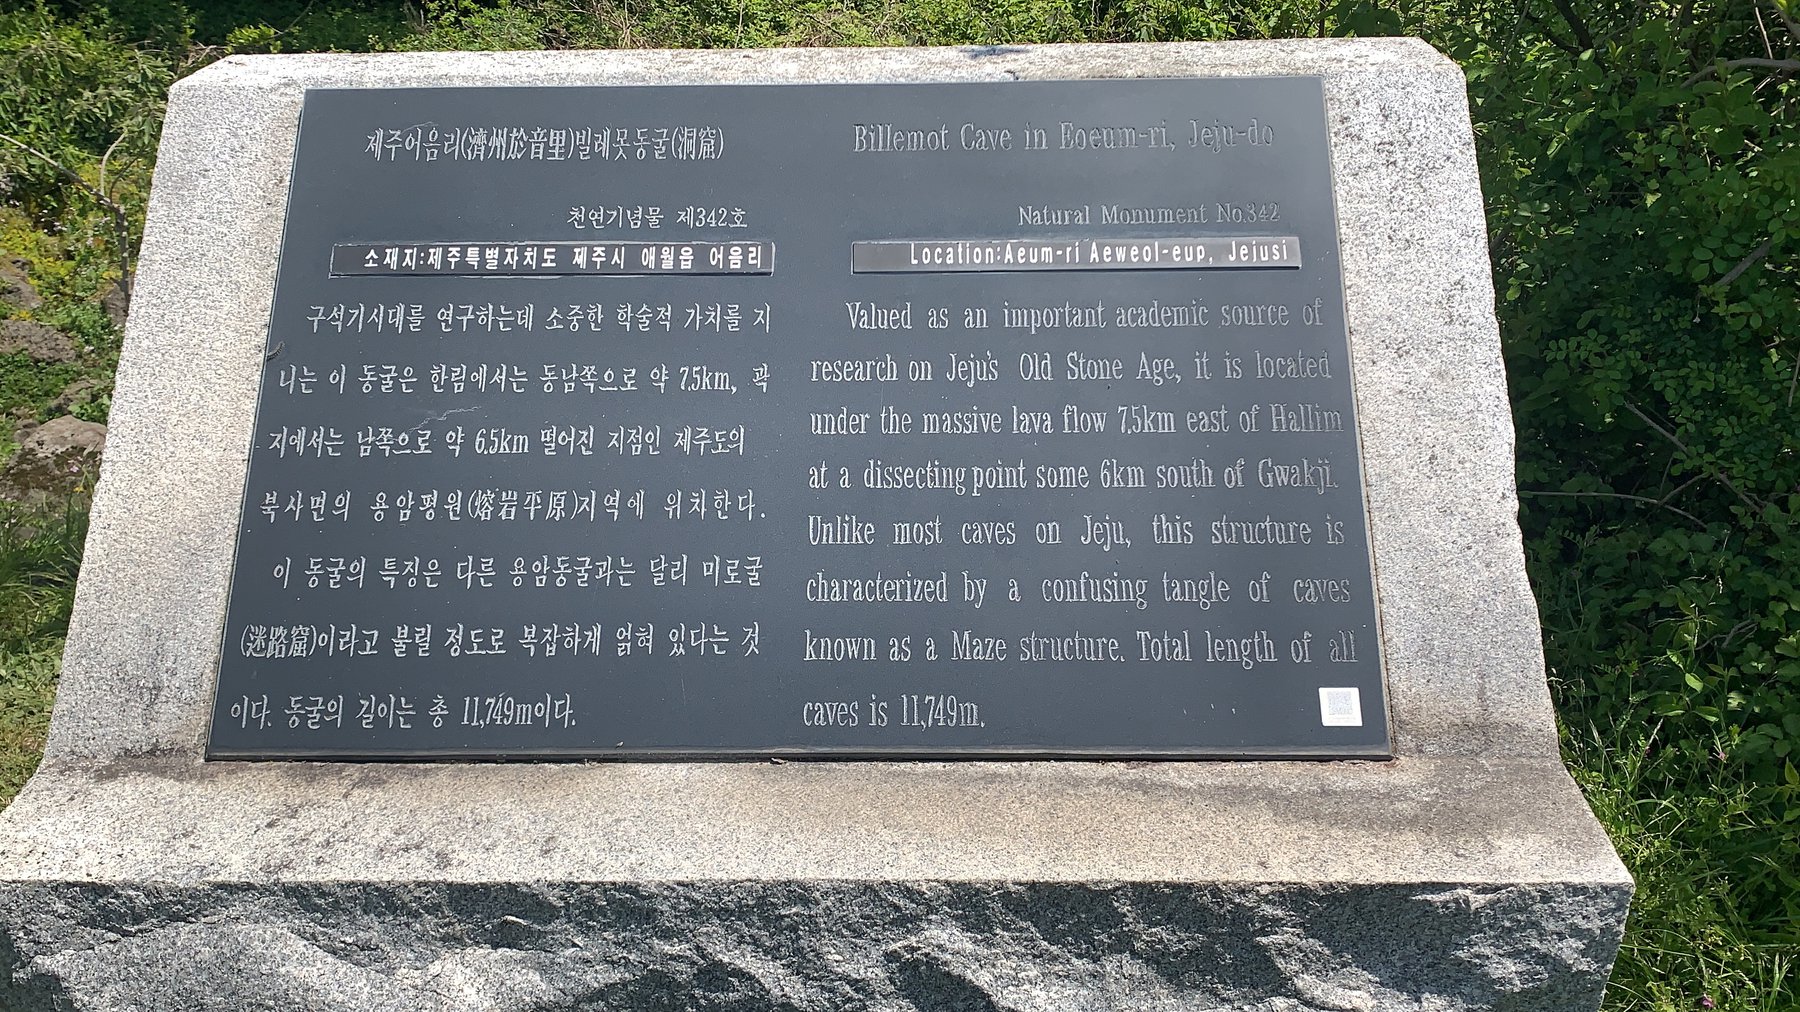 천연기념물 제342호로 지정된 빌레못굴의 설명이 적혀있는 안내비석. (2021년 4월 20일 촬영)